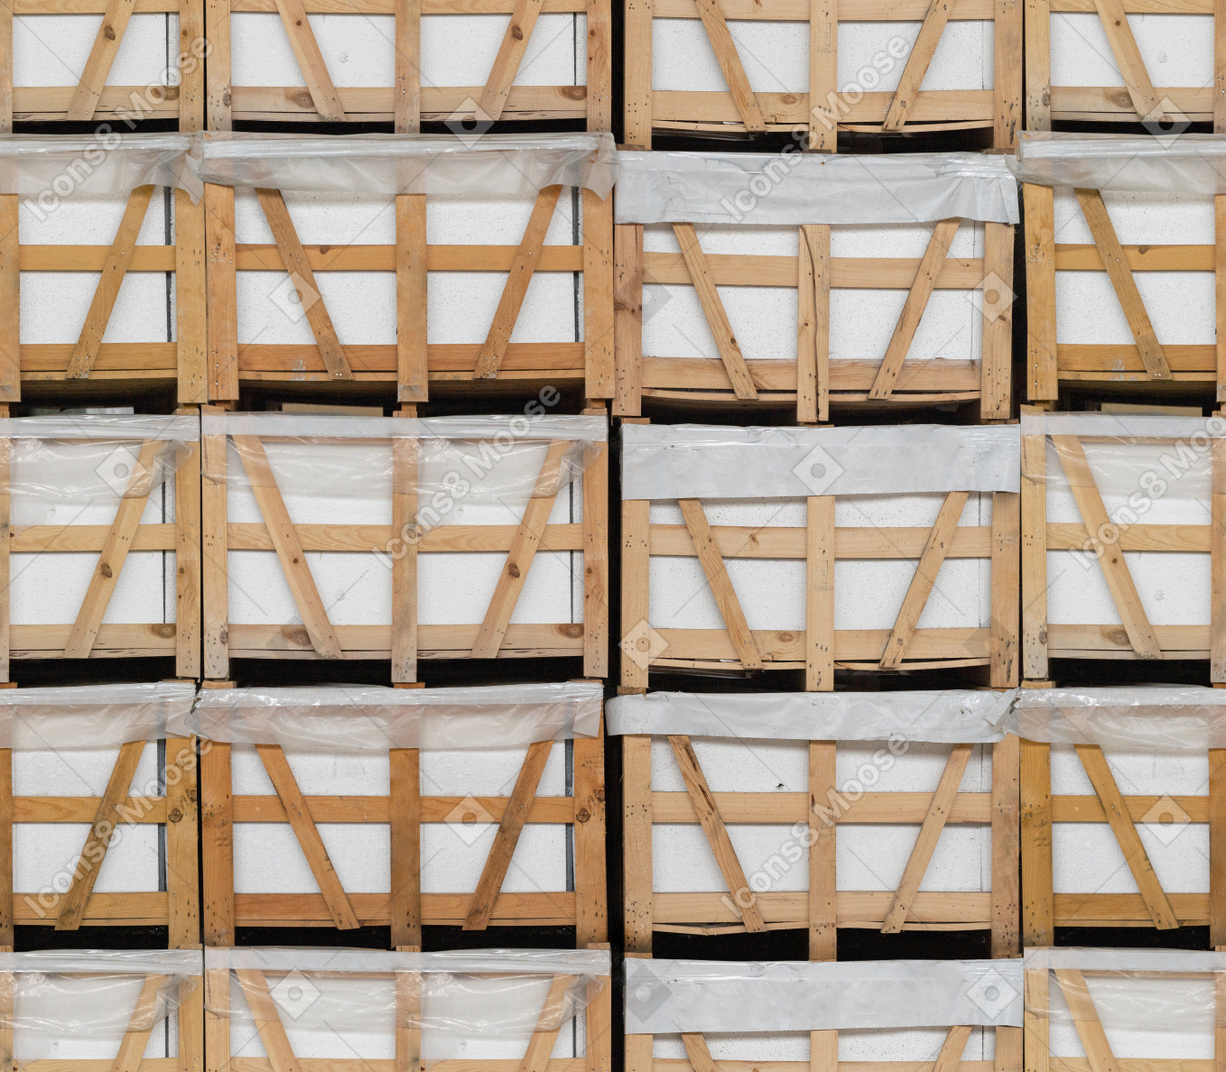 Tijolos brancos armazenados em caixotes de madeira